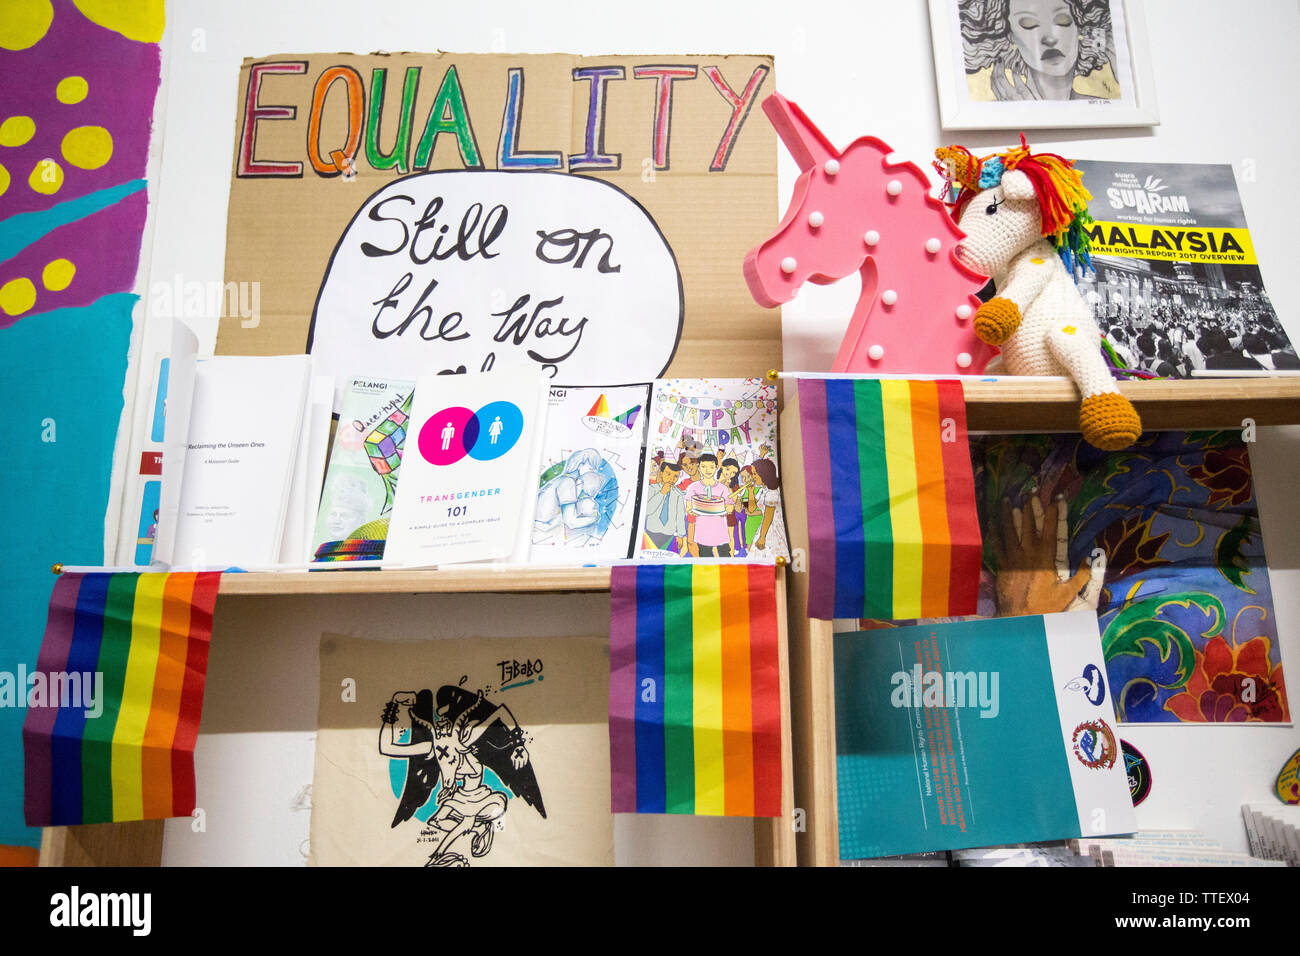 La Malaisie livres LGBT, drapeaux, l'art et de souvenirs à un centre de ressources pour les LGBTQ à Kuala Lumpur, Malaisie. Banque D'Images